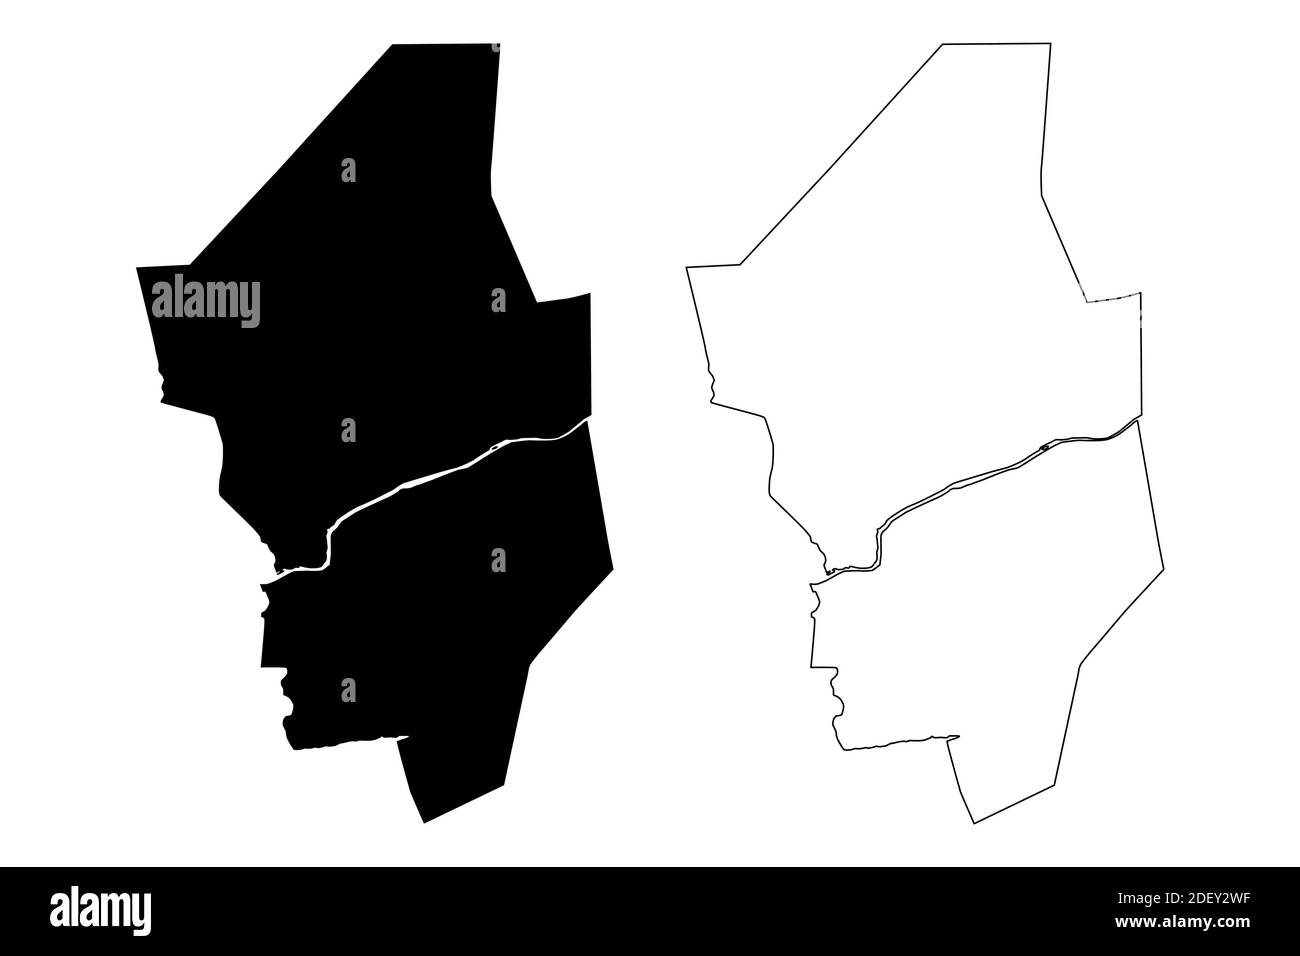 Columbia County, Commonwealth of Pennsylvania (Stati Uniti, Stati Uniti d'America, Stati Uniti, Stati Uniti, Stati Uniti), illustrazione vettoriale mappa, schizzo della Columbia Illustrazione Vettoriale